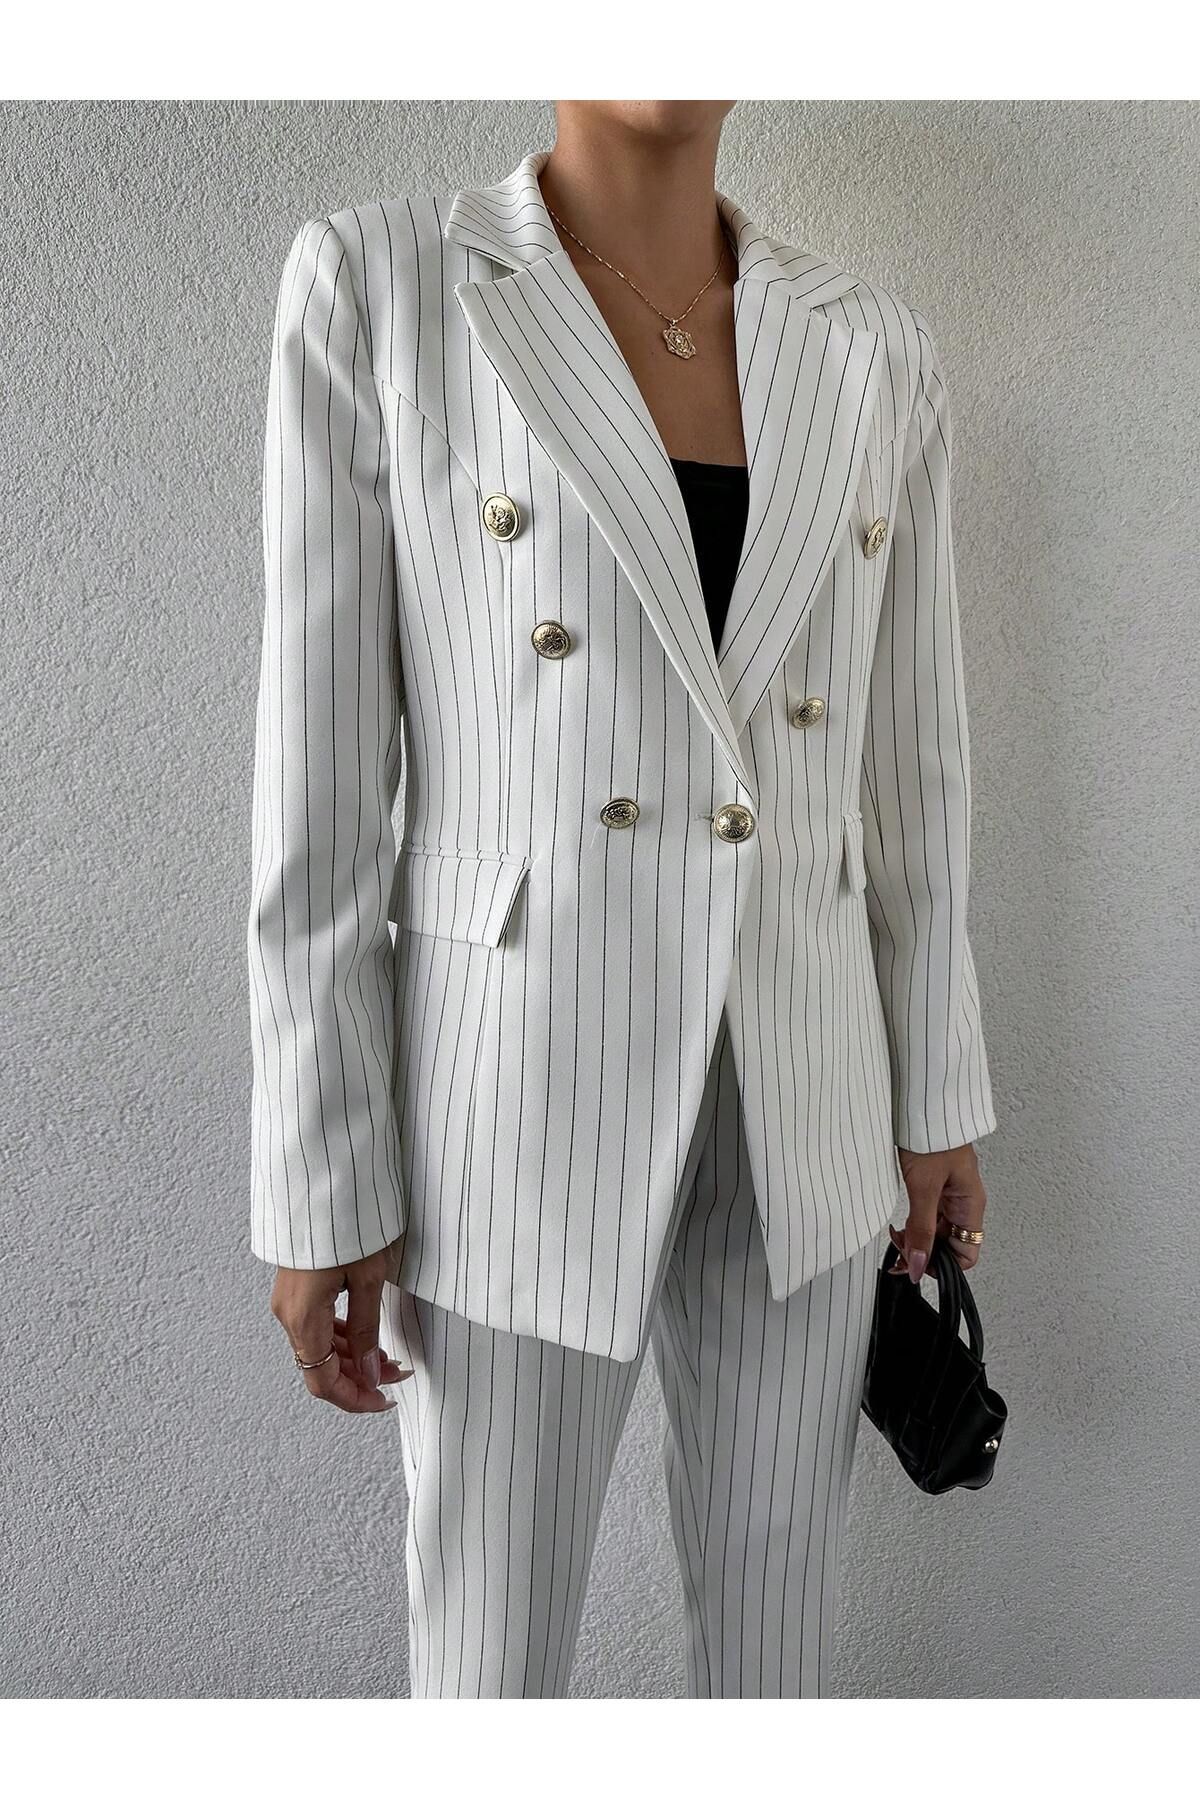 Rmz Style Düğmeli Sahte Cepli Blazer Ceket Kemerli Cepli Esnek Pantolon Asimetrik Kesim Takım Elbise